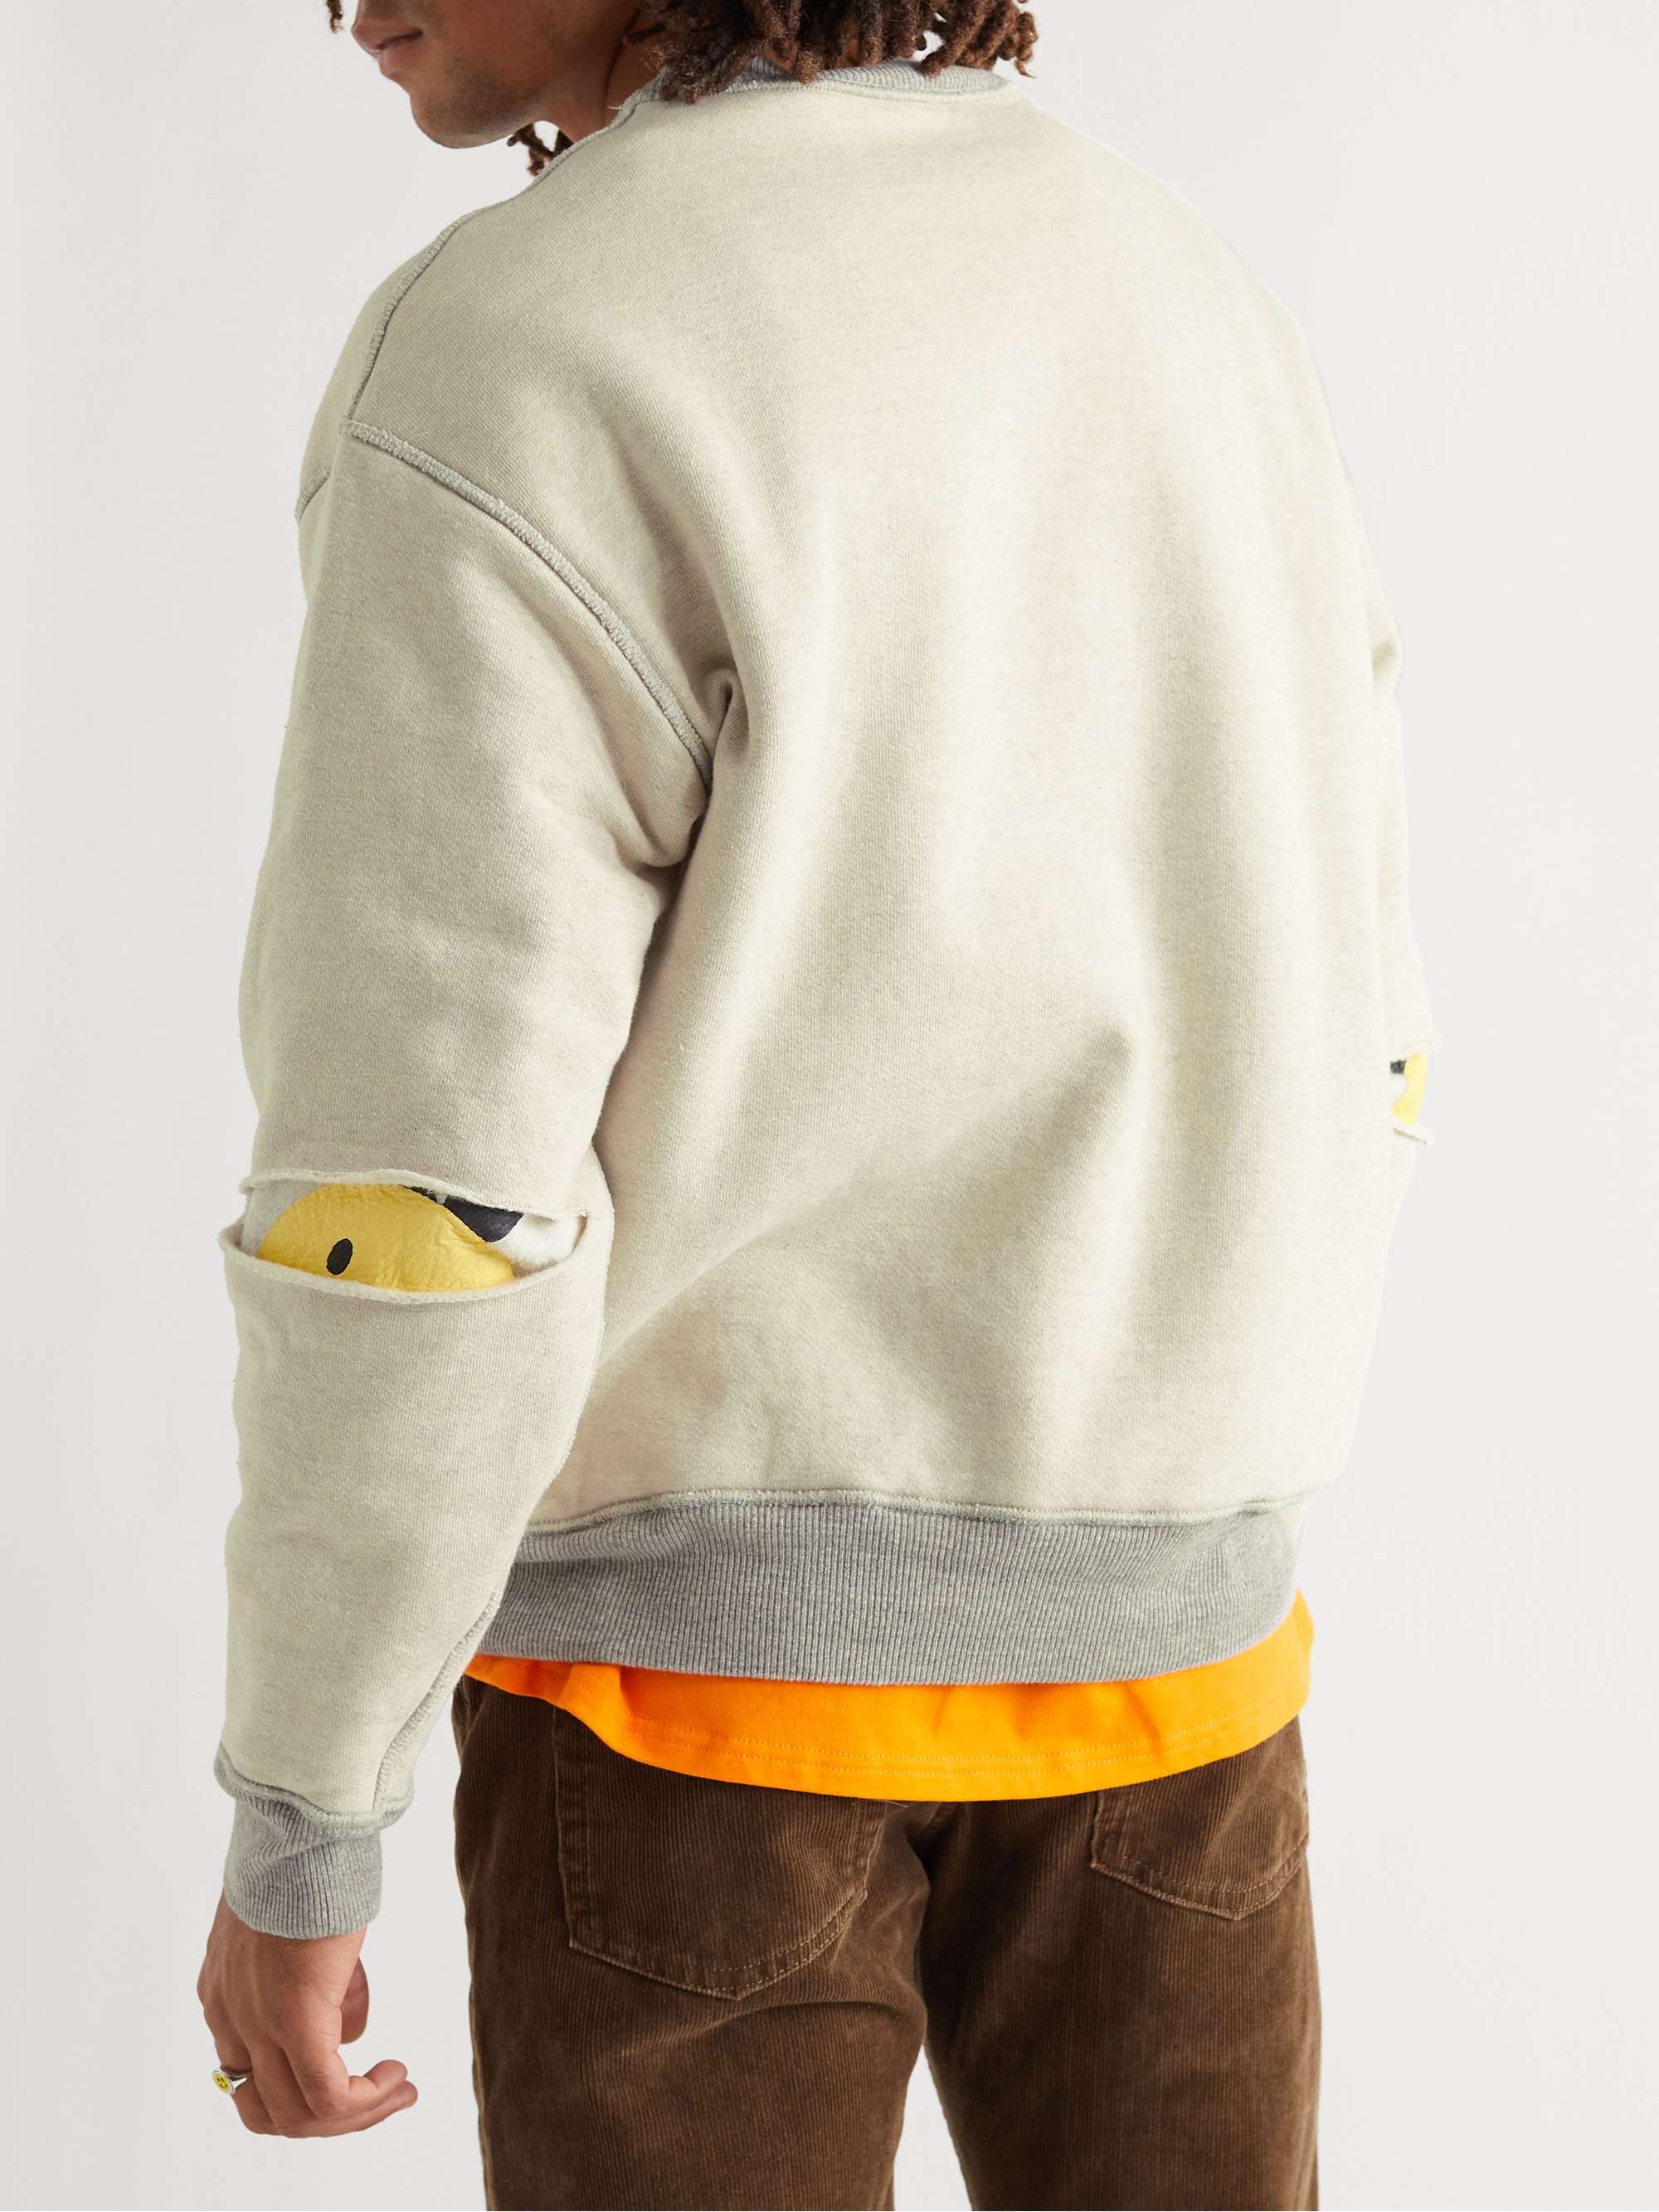 KAPITAL Coneybowy Reversible Printed Cotton-Jersey Sweatshirt